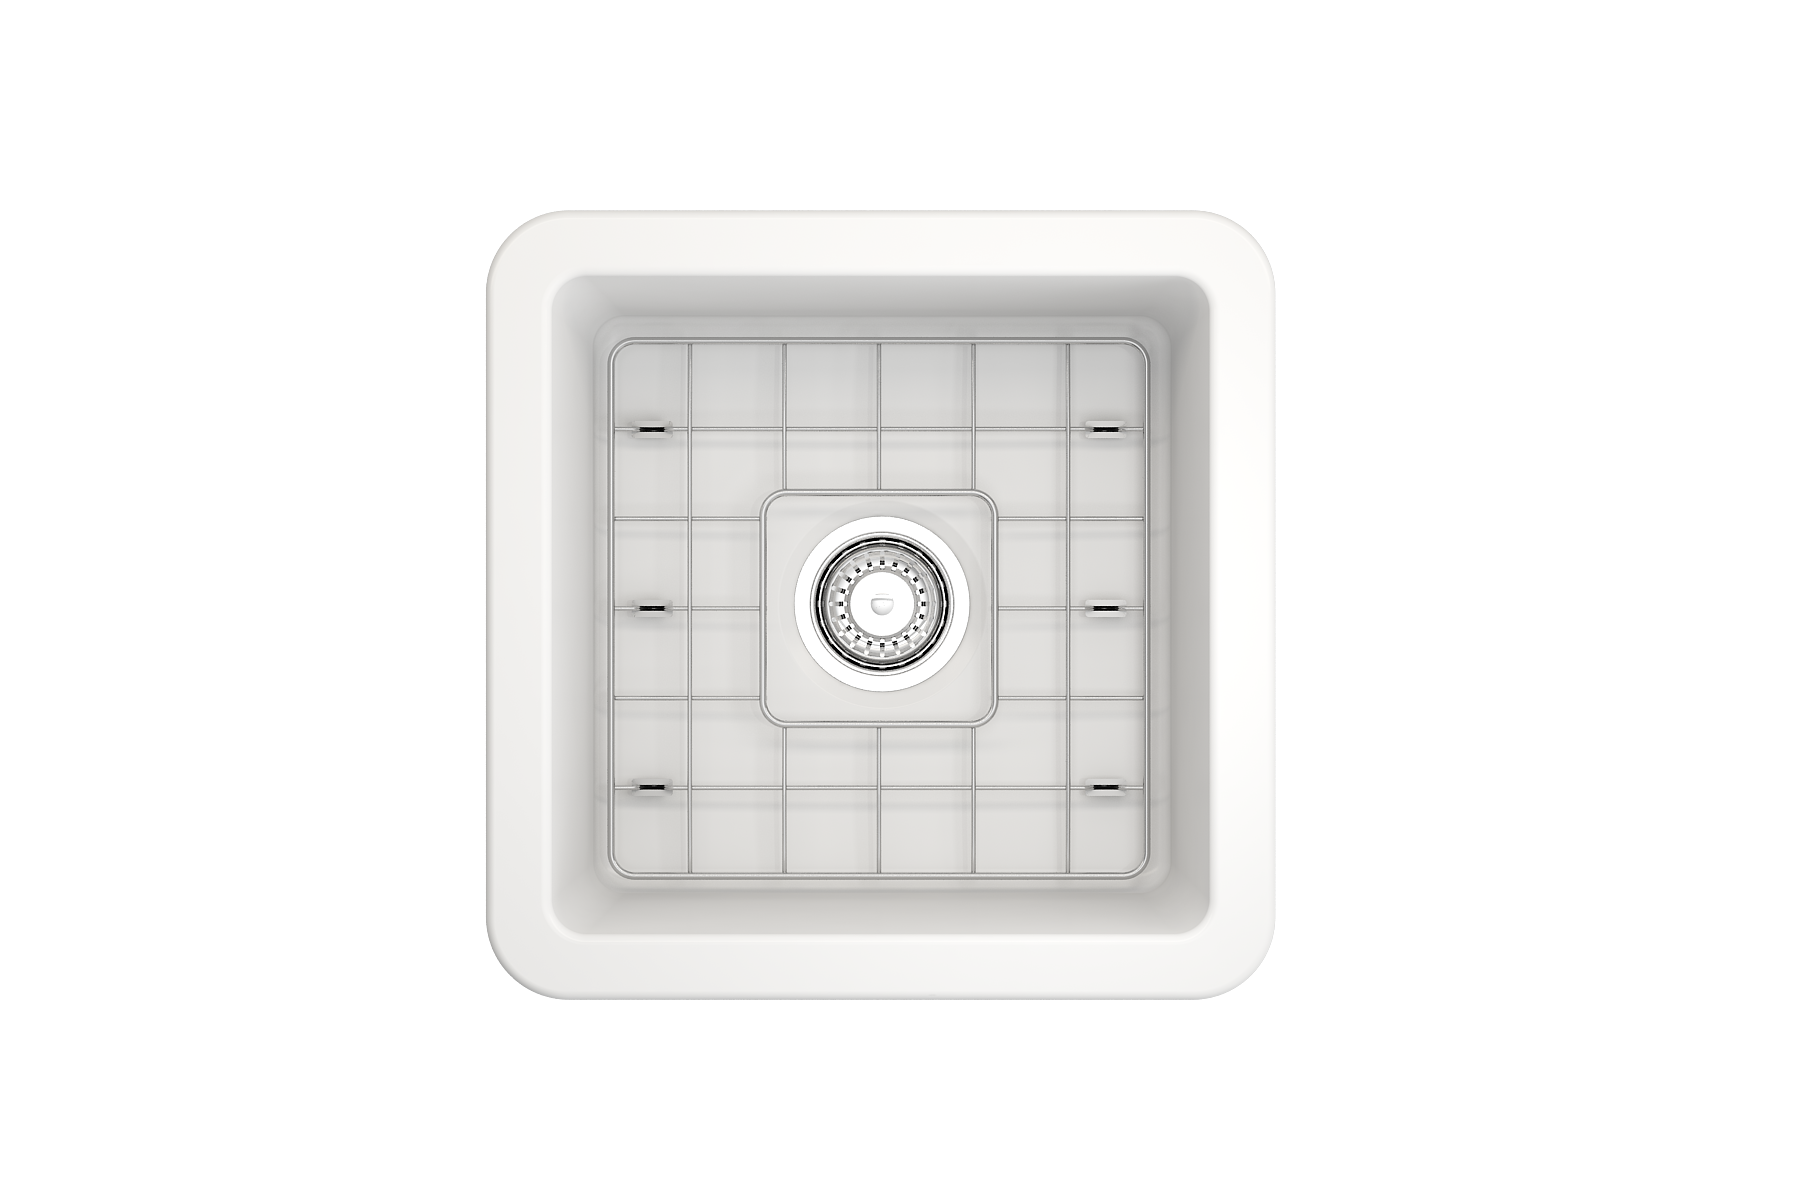 Bocchi Sotto 18" Fireclay Undermount or Drop-in Kitchen Prep Sink